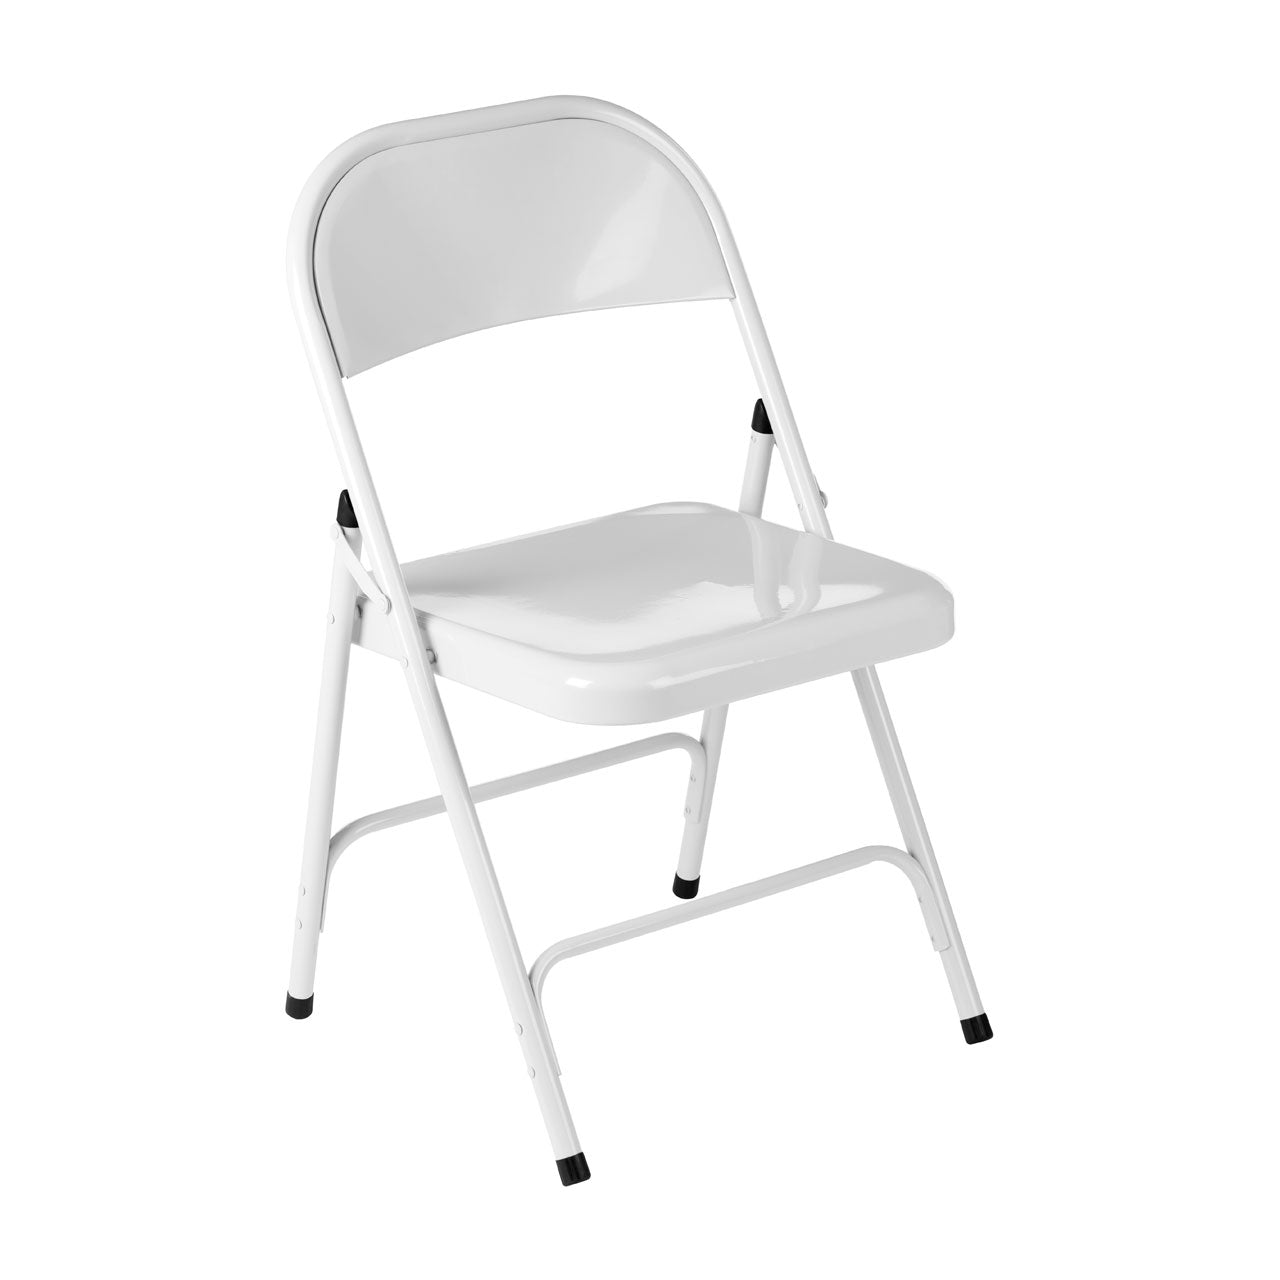 Folding Metal Chair White 46 X 43 X 78Cm